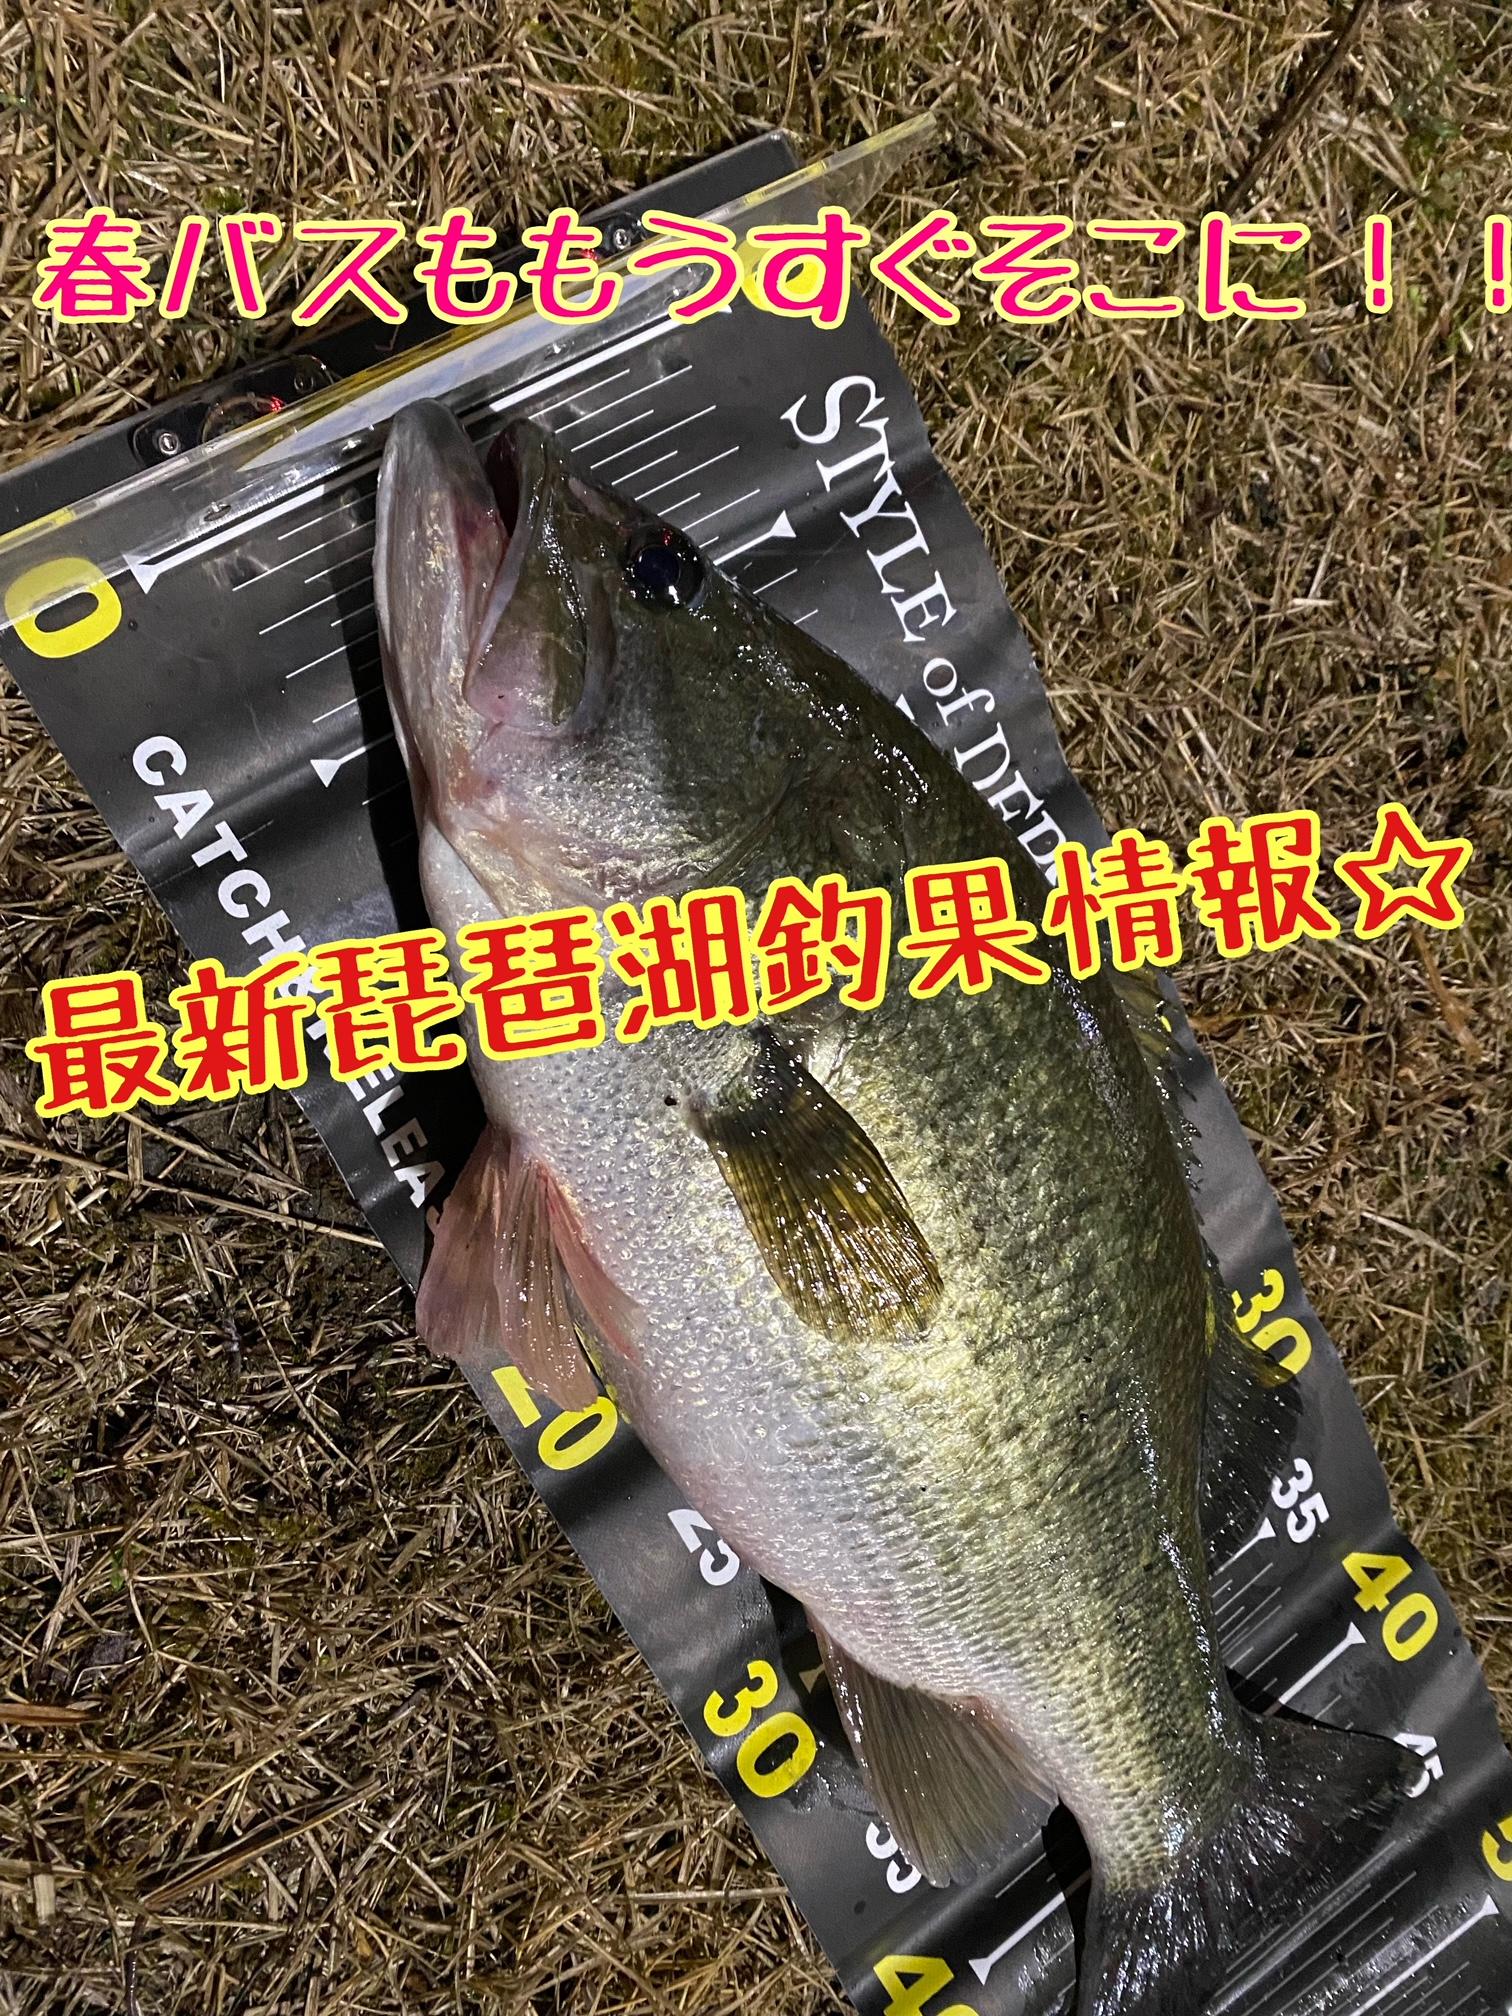 彦根店 琵琶湖バス最新情報 釣具のイシグロ 釣り情報サイト